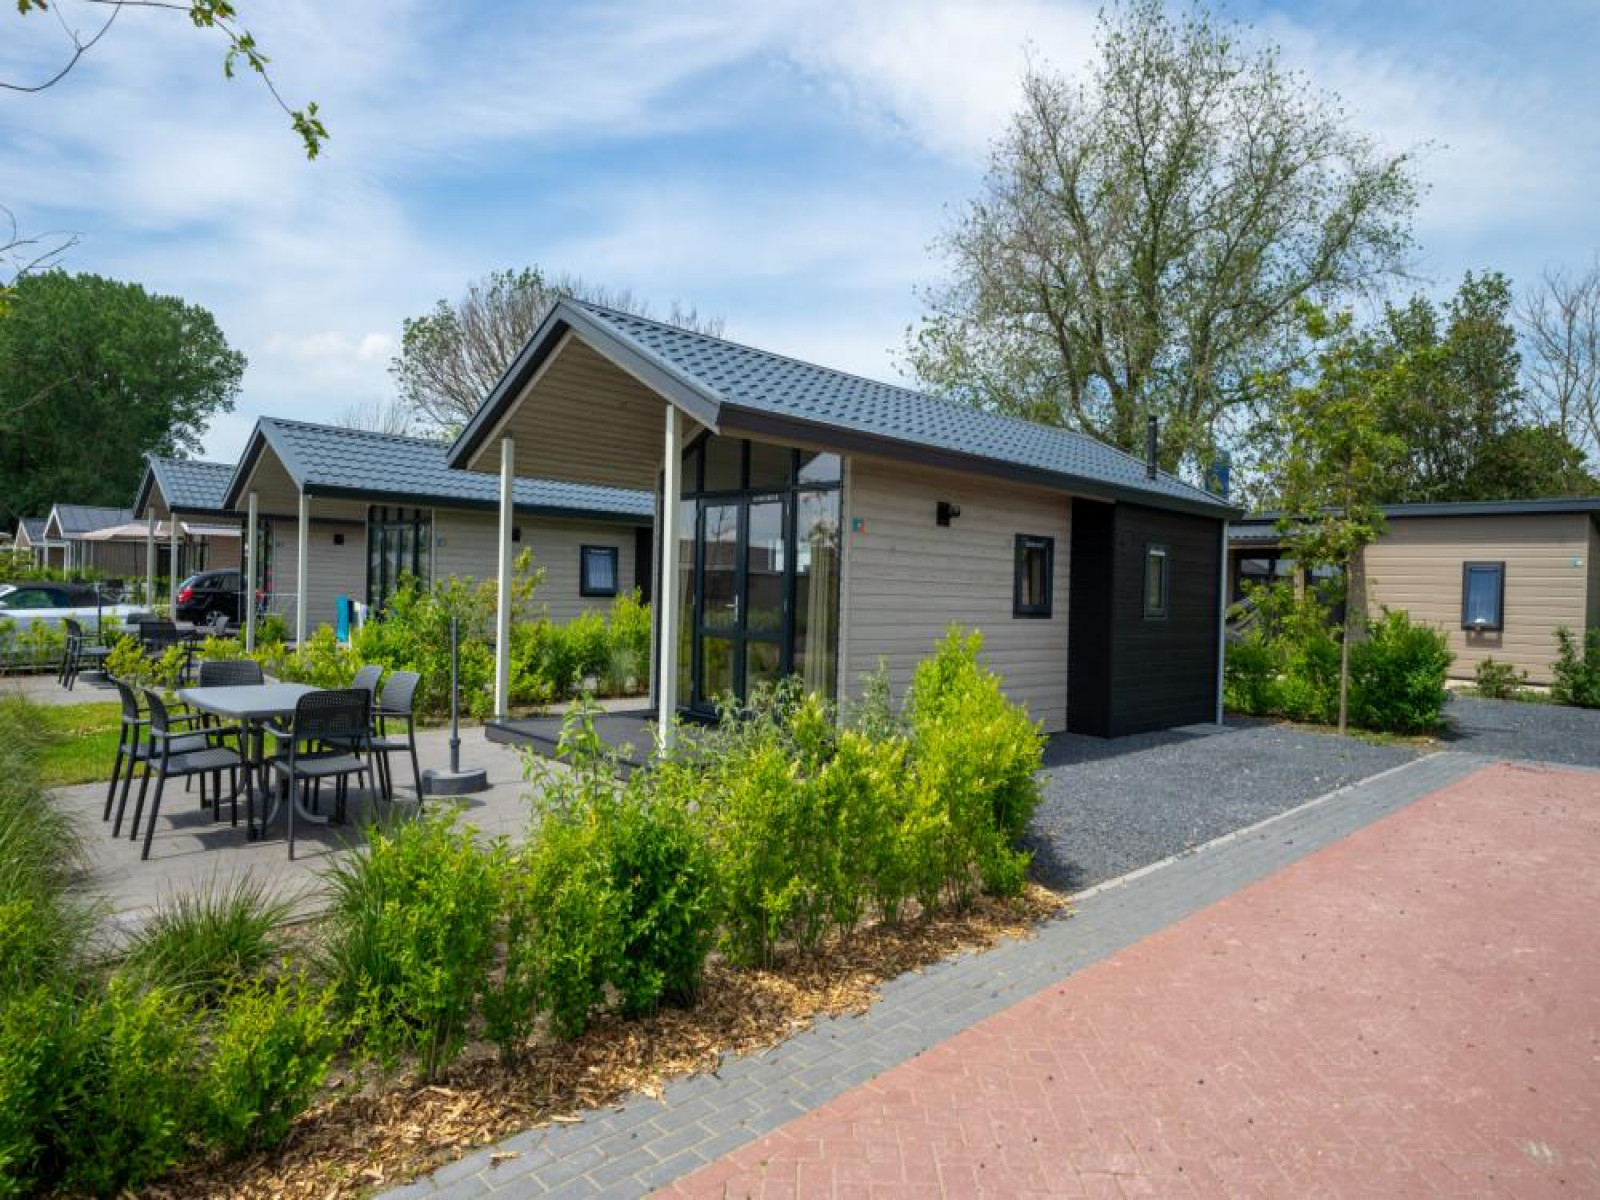 Compacte 4 persoons Tiny House met sfeerhaard op vakantiepark aan het Markermeer - Nederland - Europa - Bovenkarspel